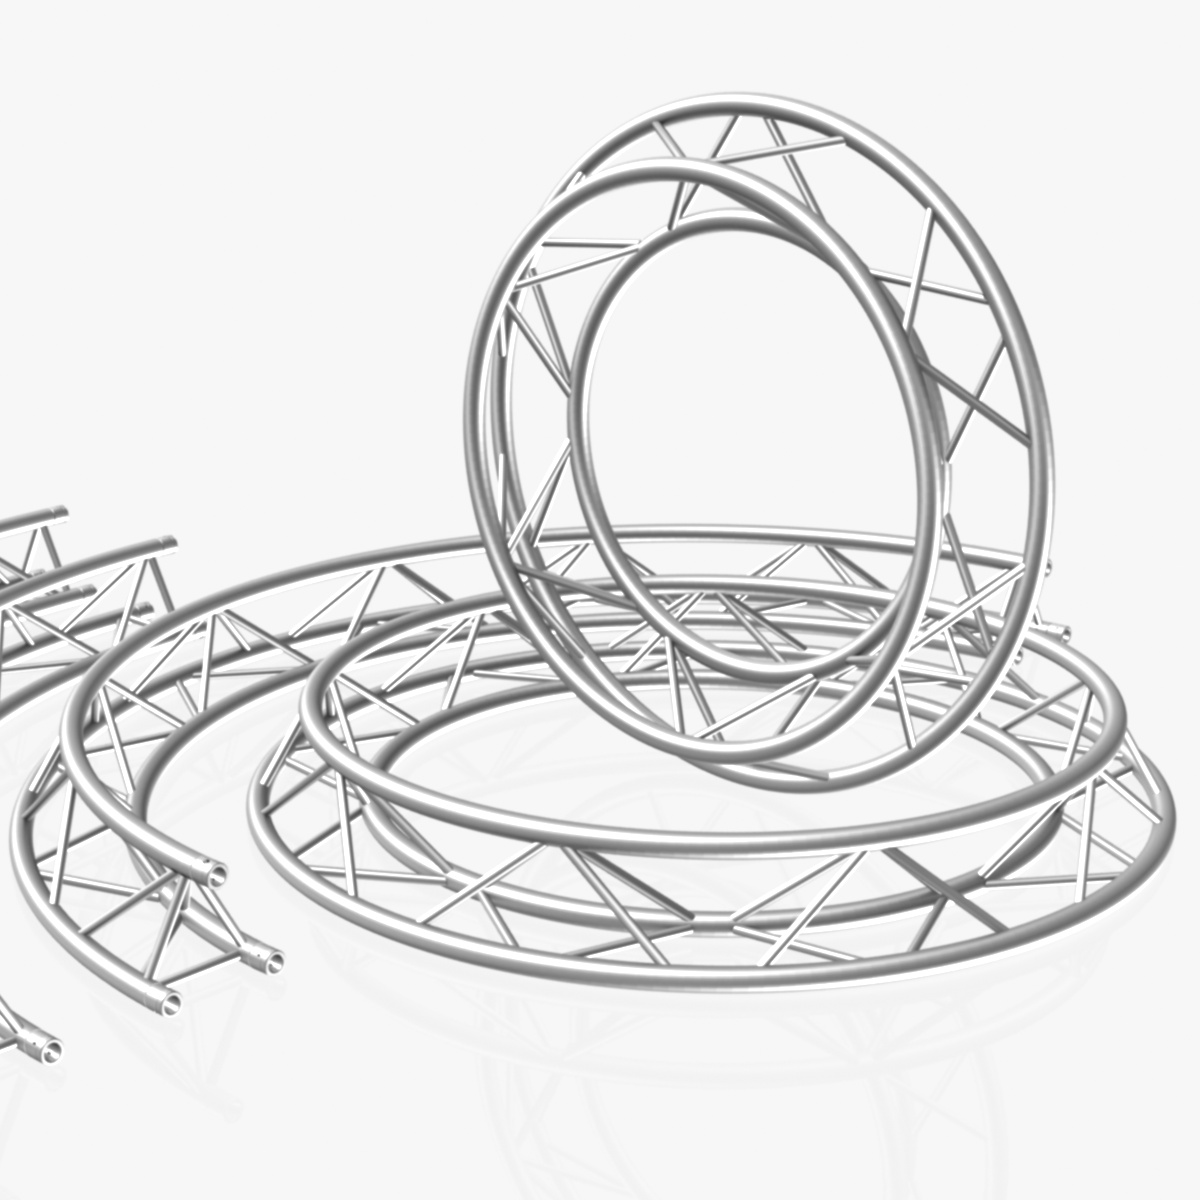 Circle Triangular Truss Modular Collection (10 Modular Pieces)